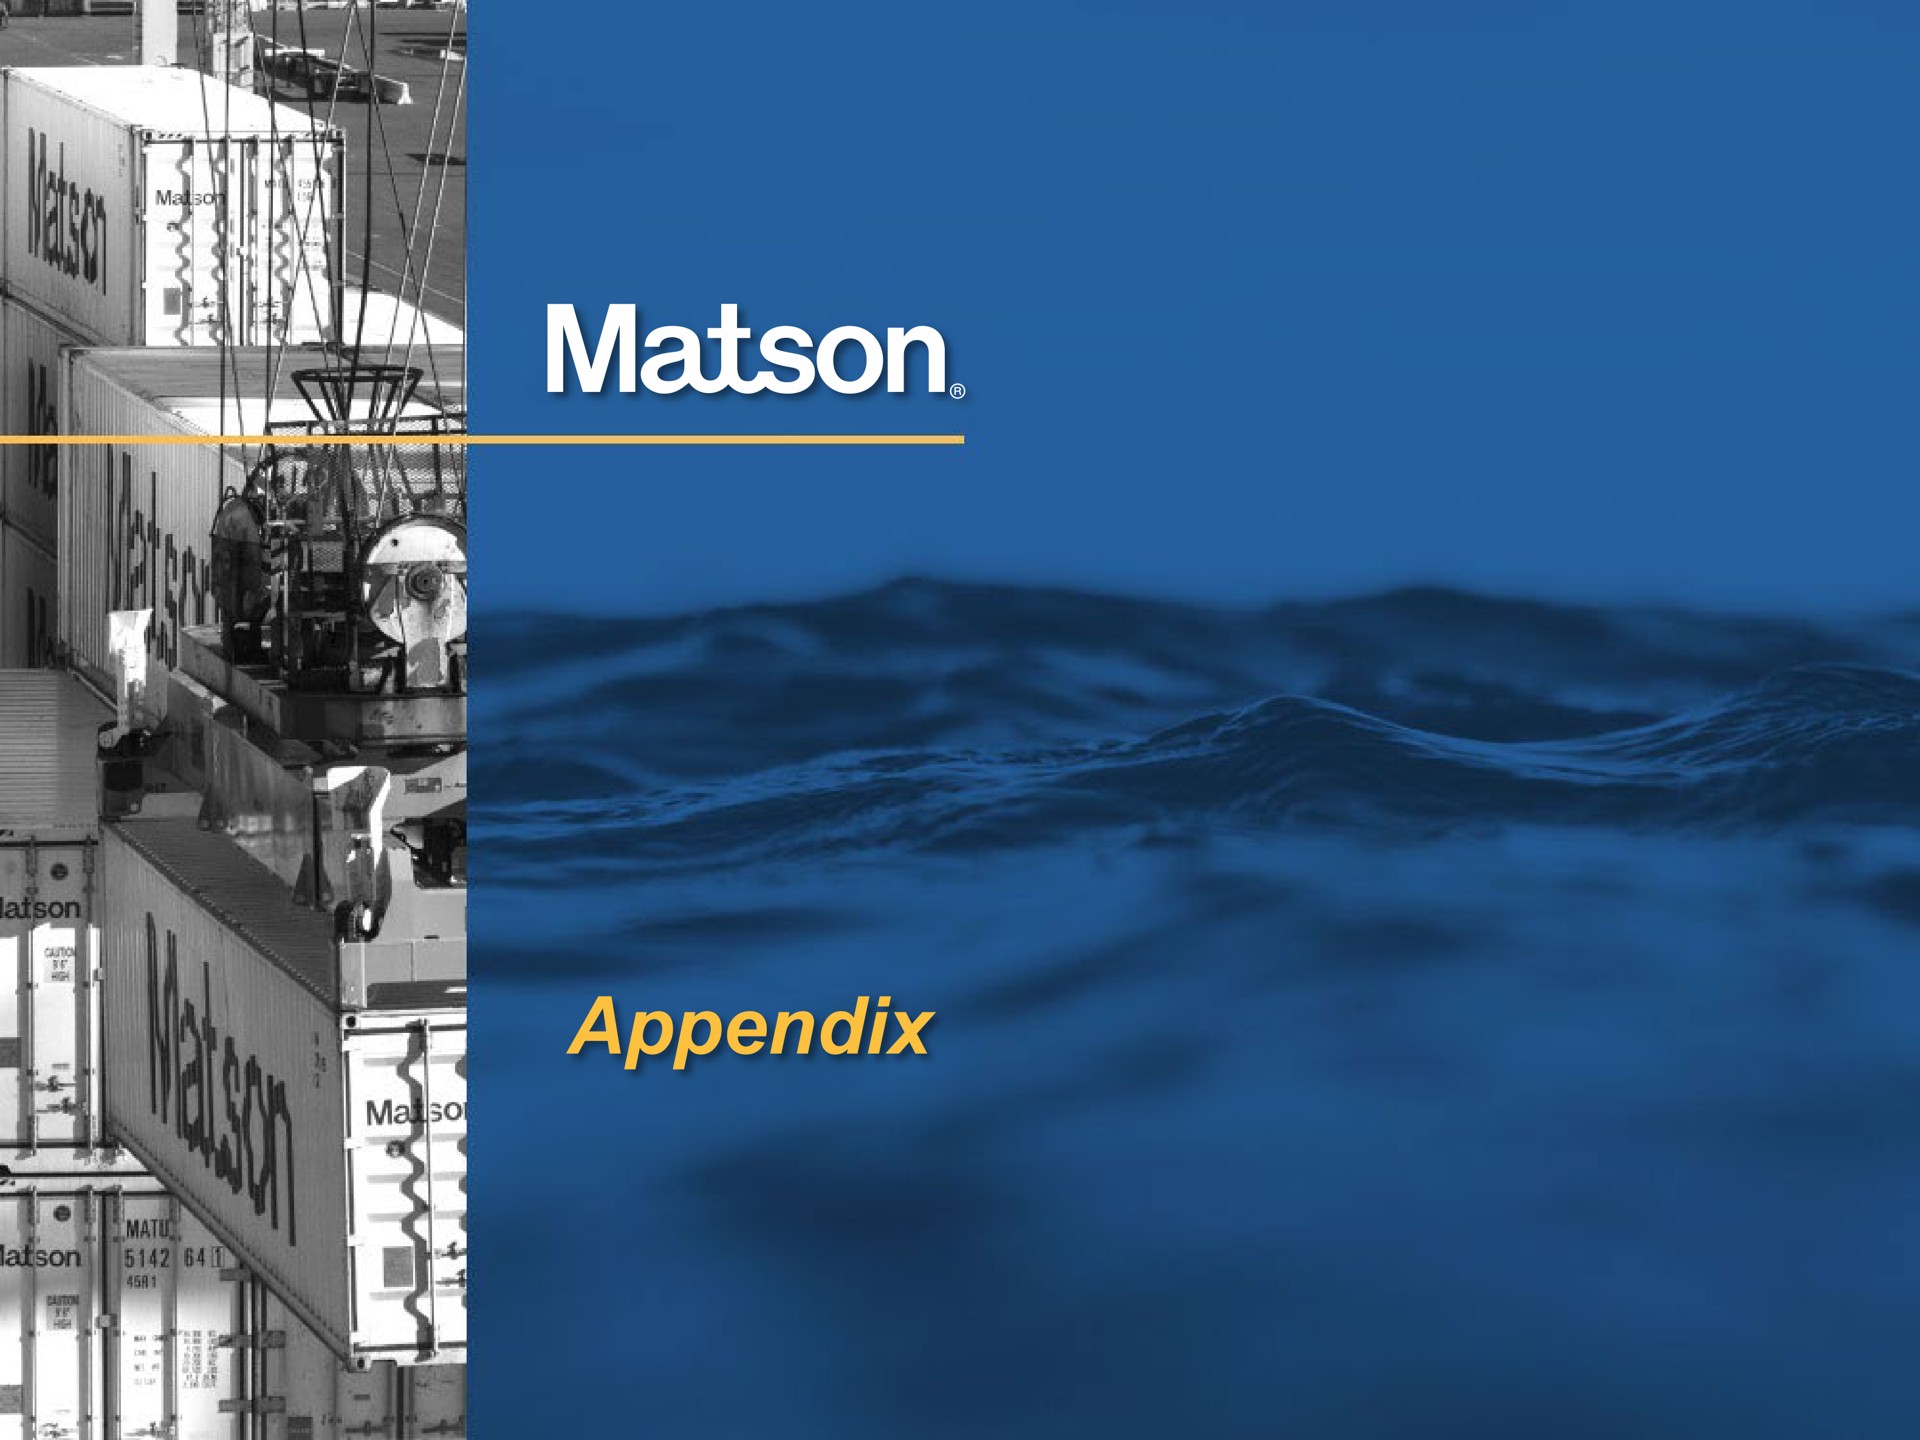 appendix | Matson